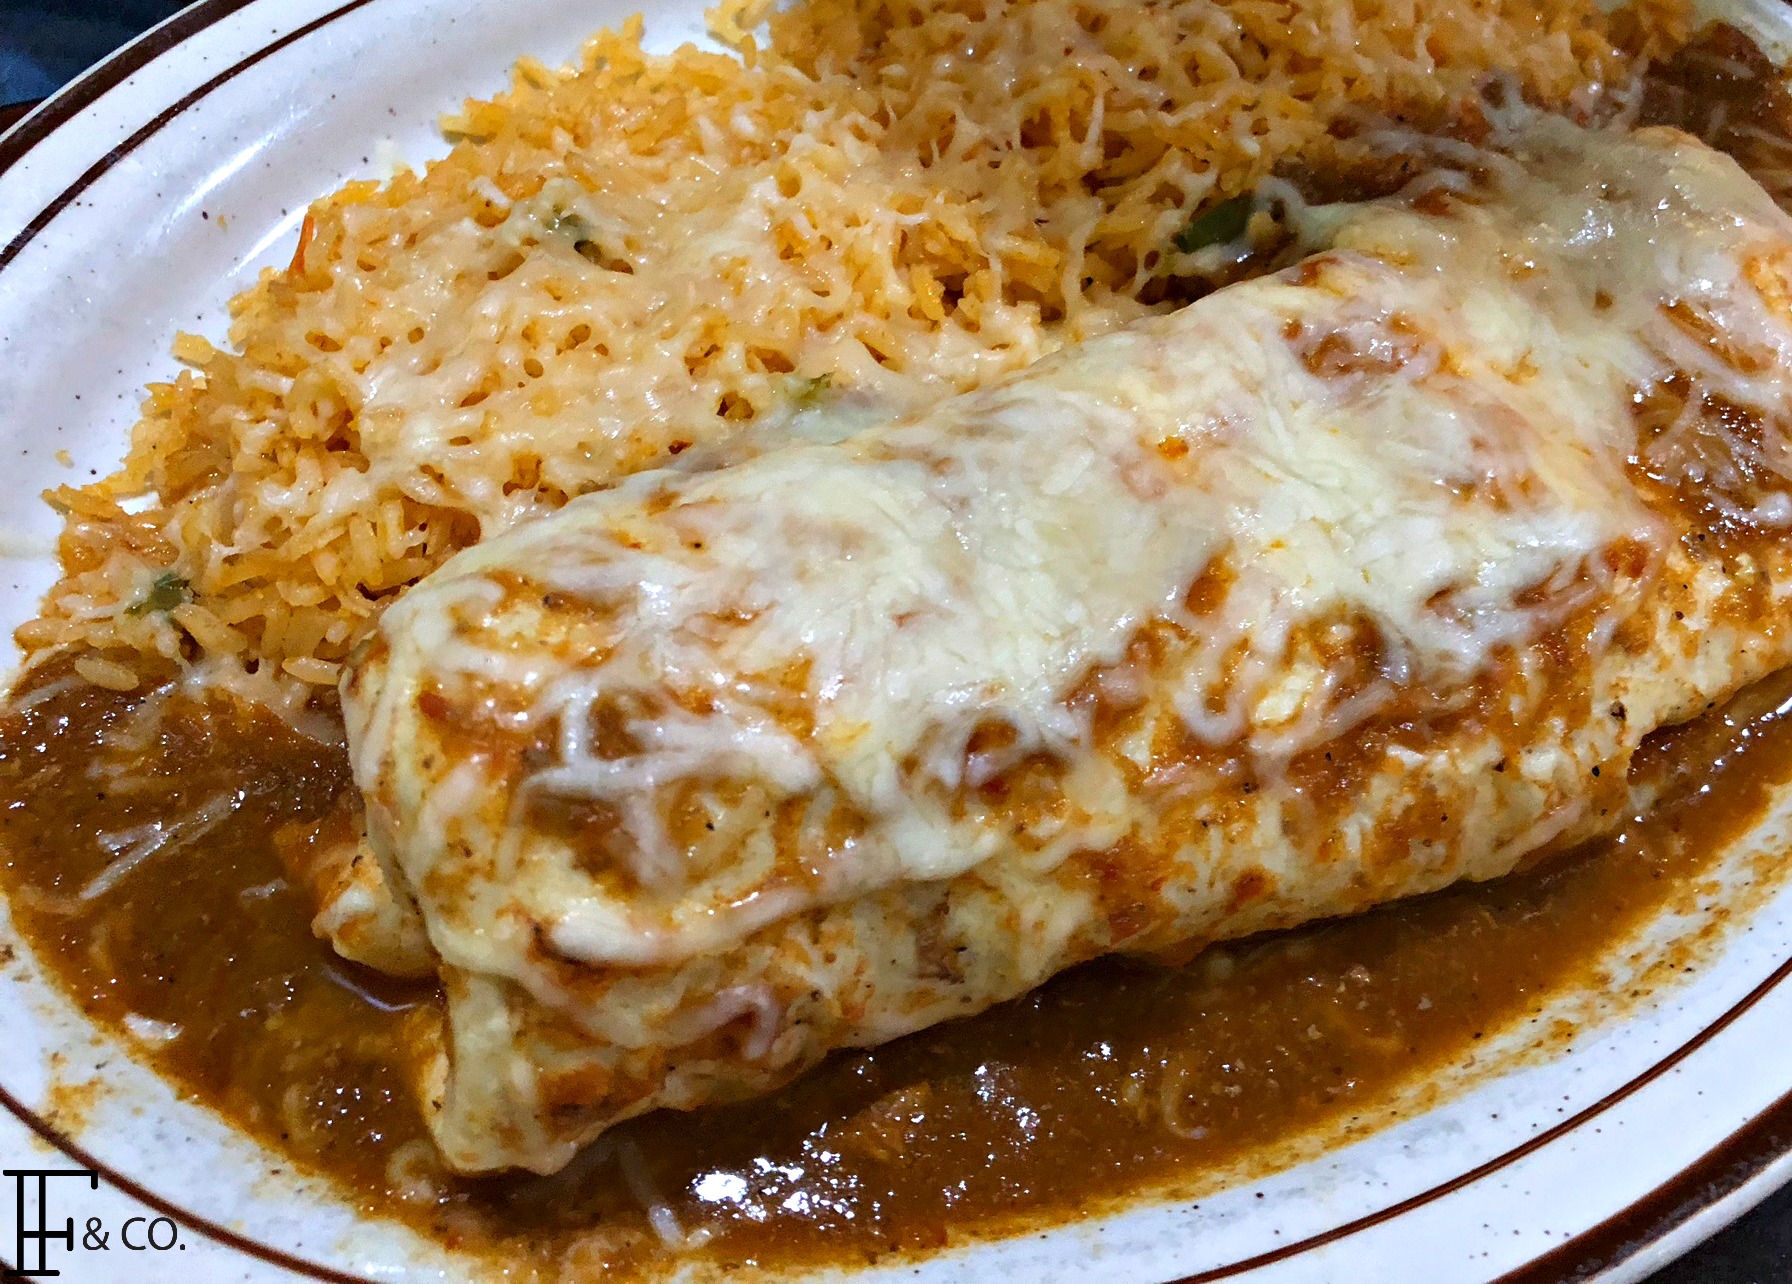 Plaza Veracruz: Delicious Mexican Food - Flint & Co